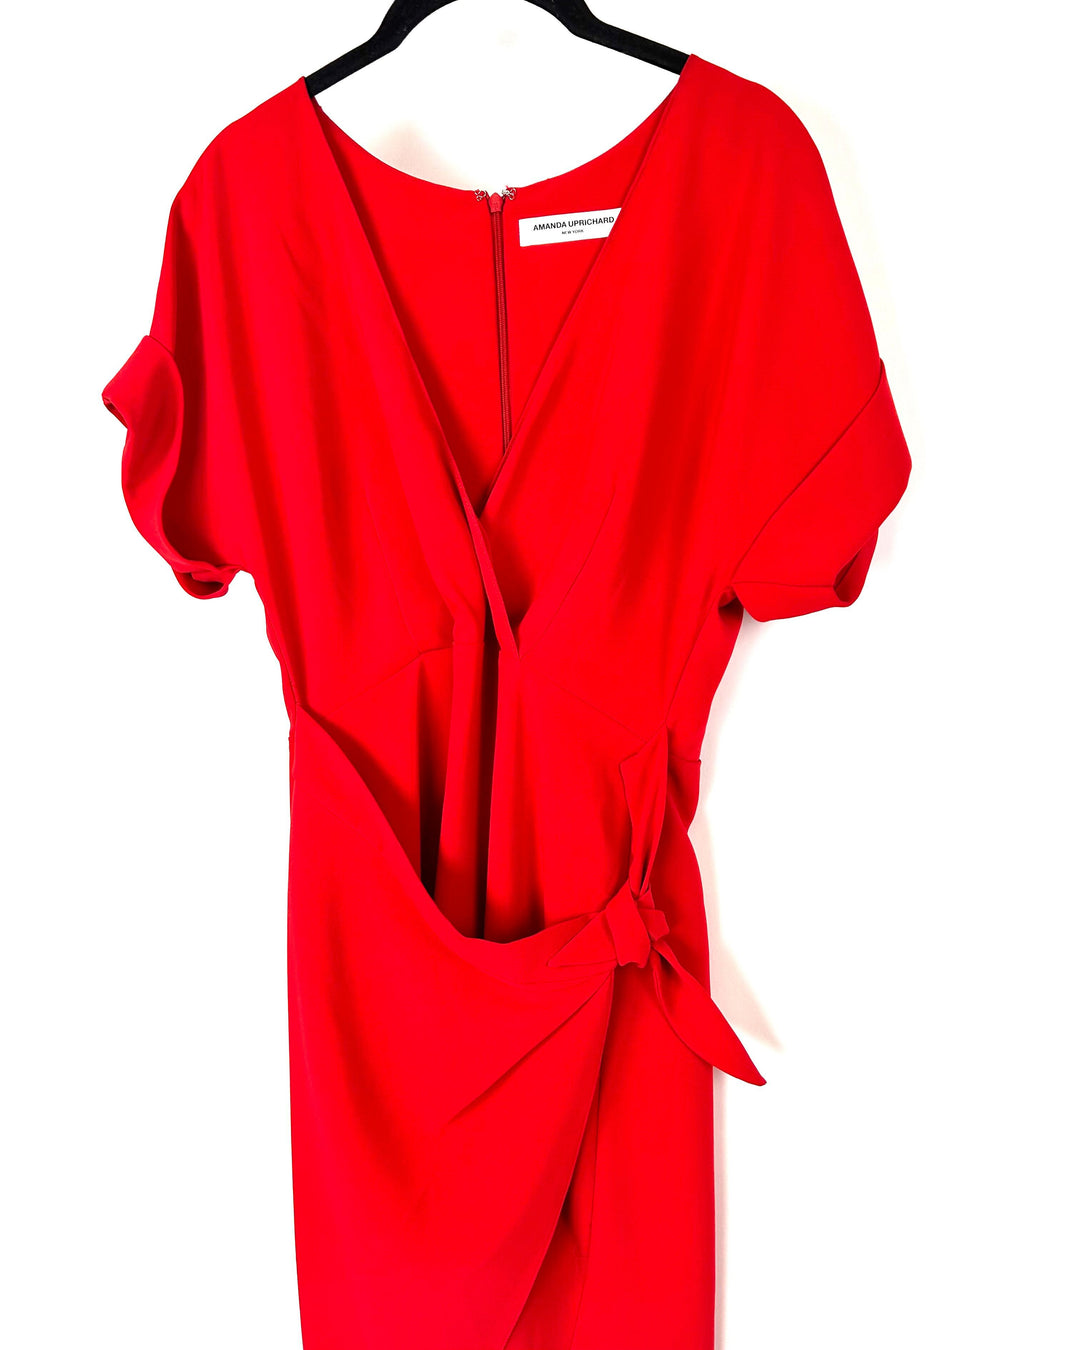 Red Side Tie Dress - Size 4-6